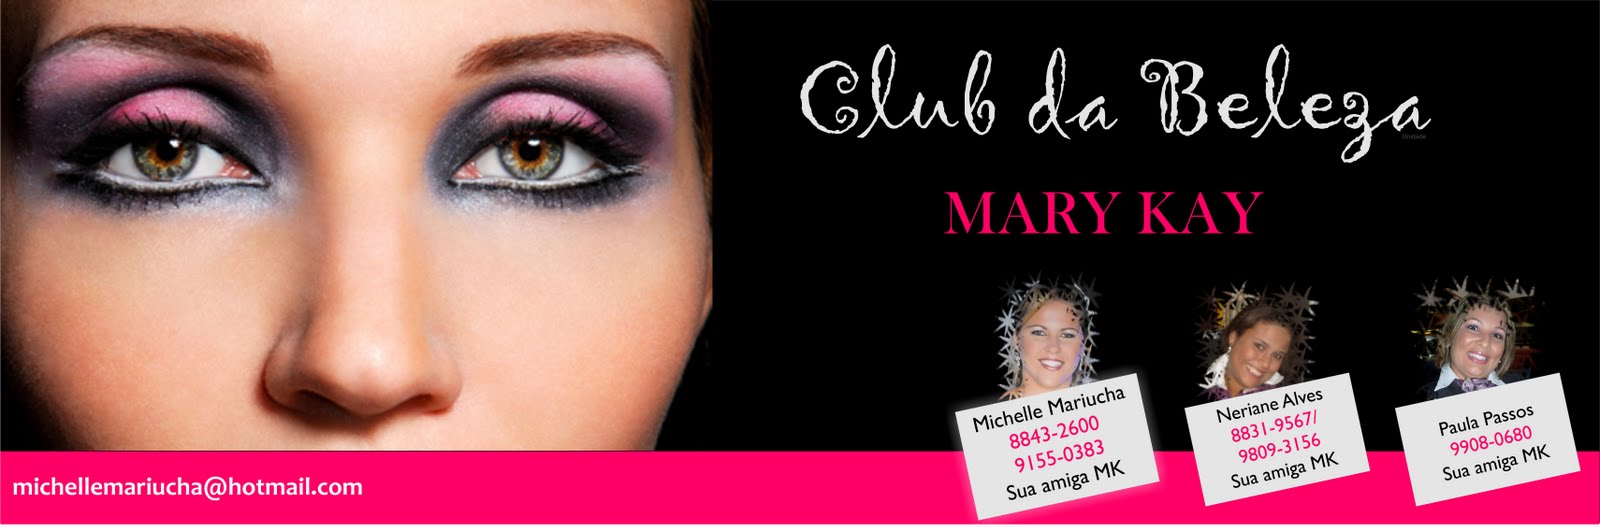 Club da Beleza (Michelle: 3043-0373 / 9155-0383)